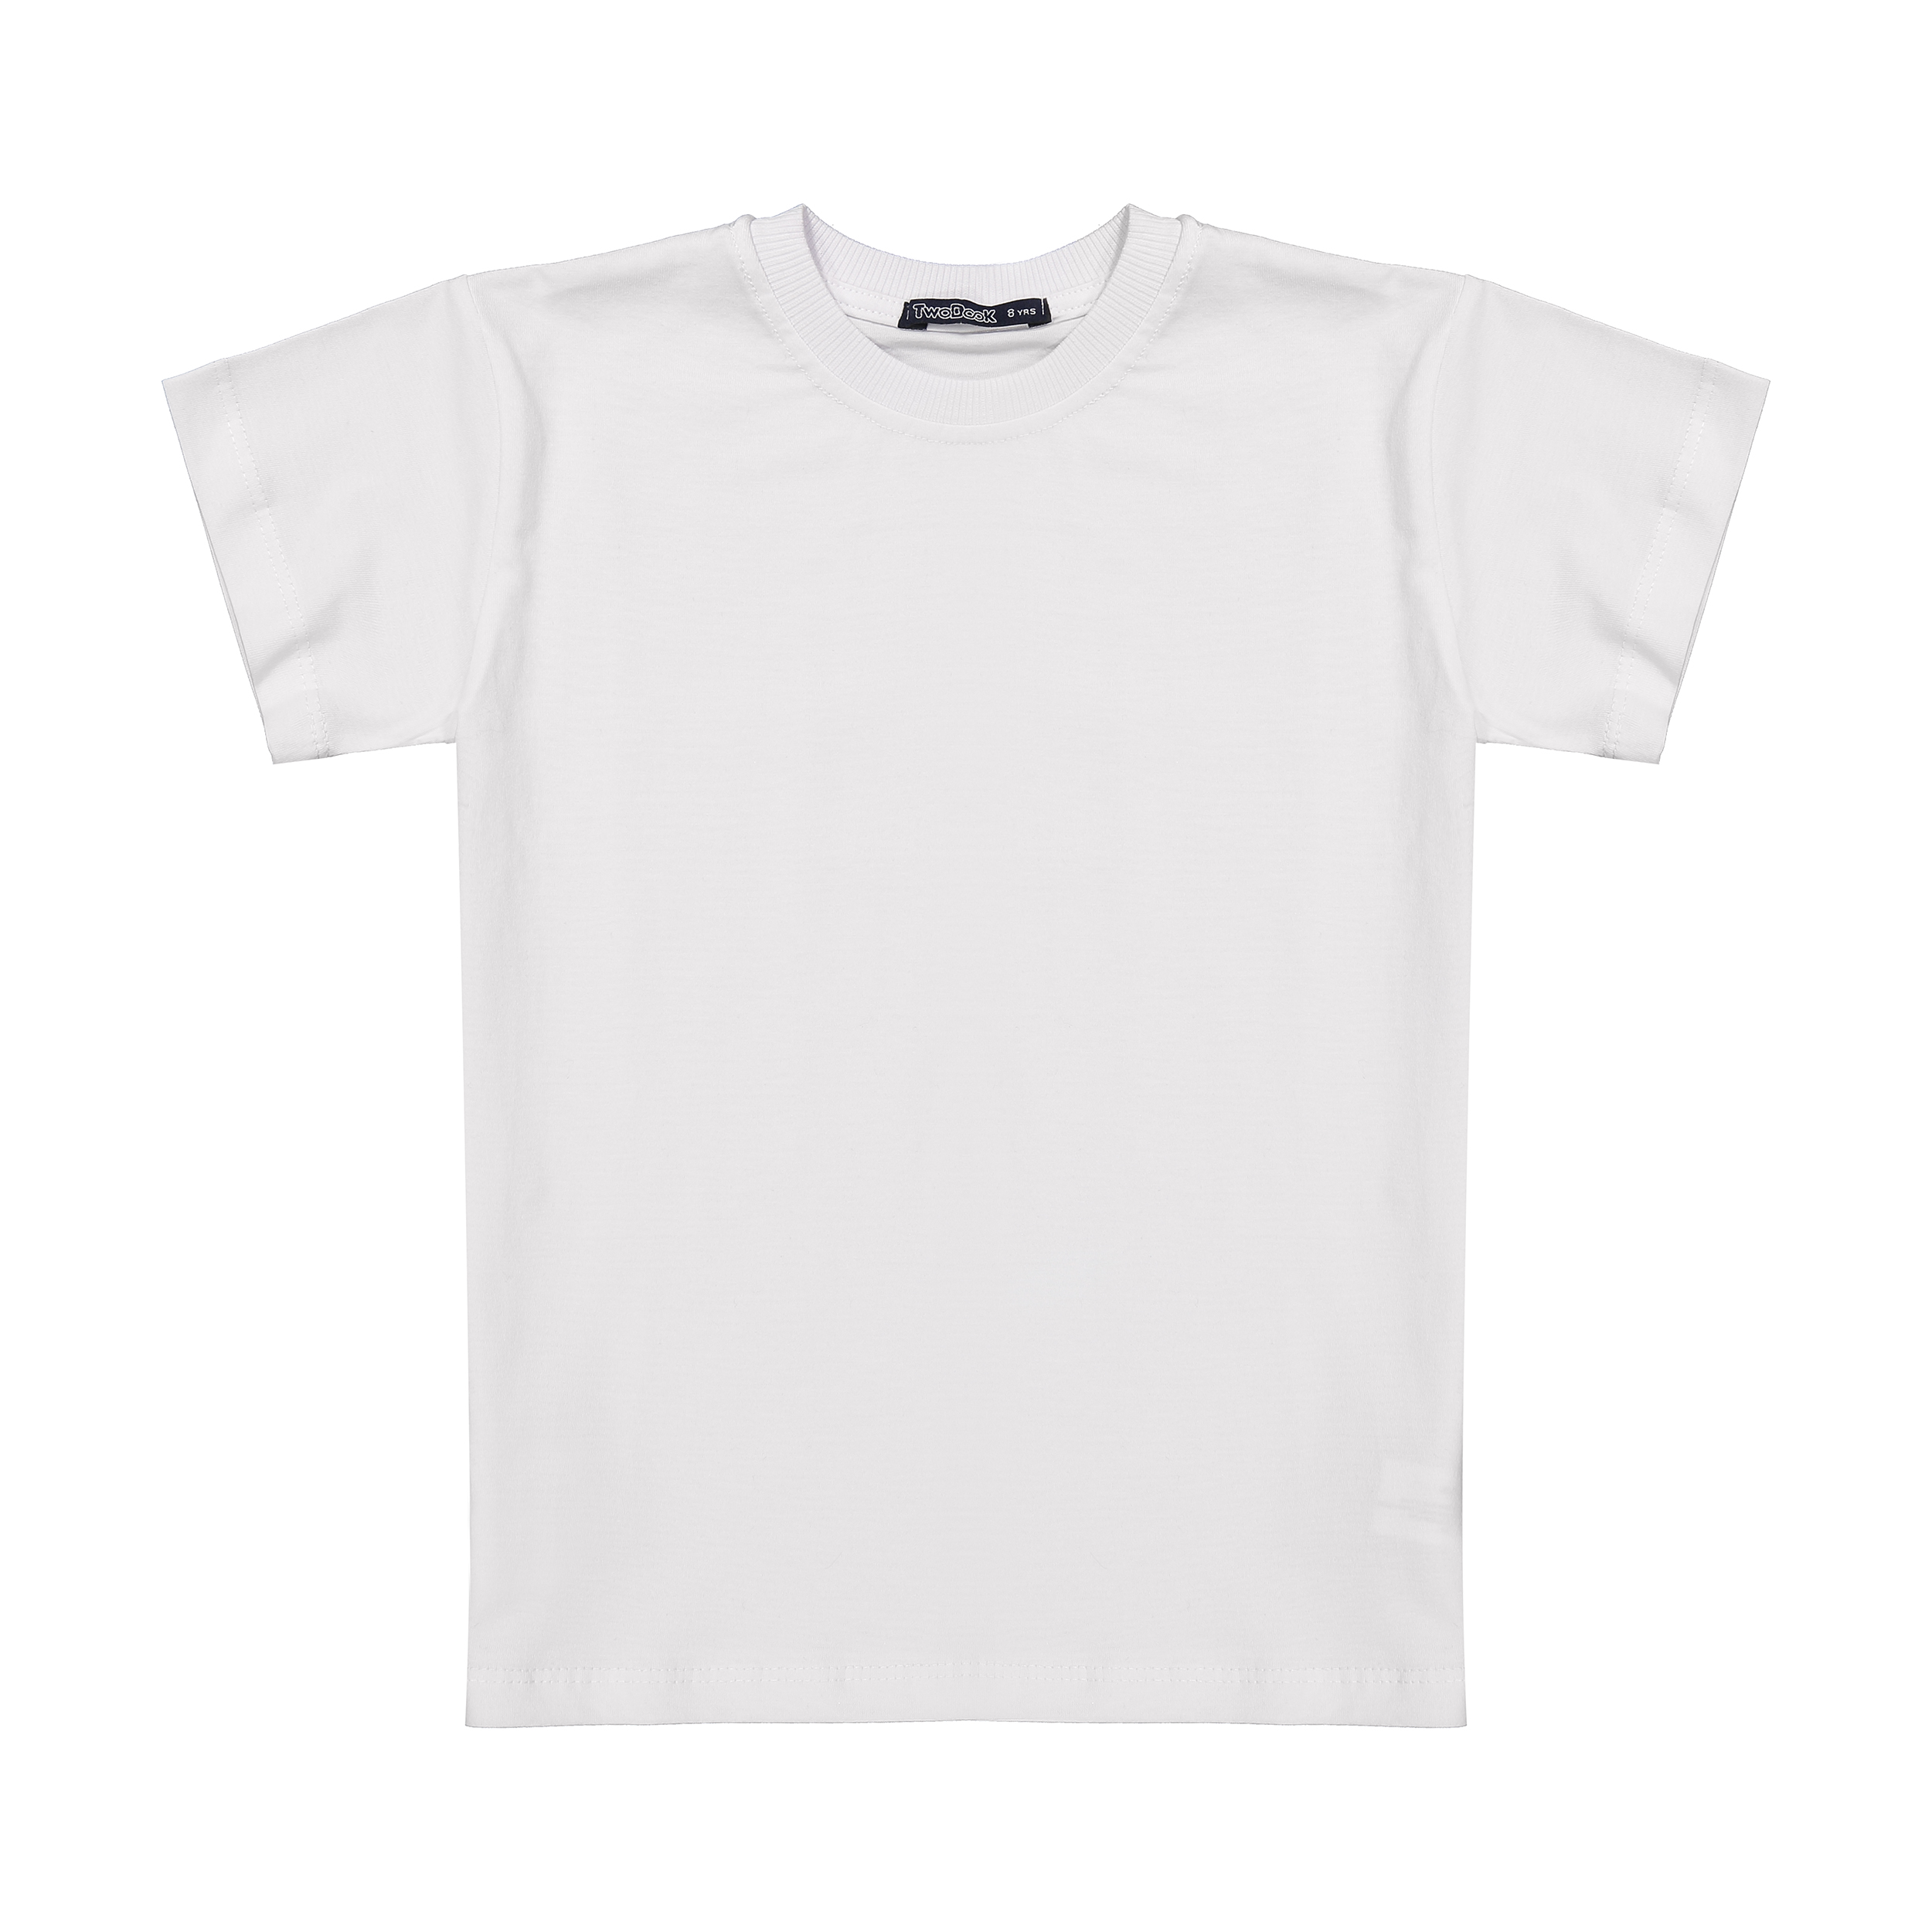 تی شرت آستین کوتاه دخترانه تودوک مدل 2151614-01